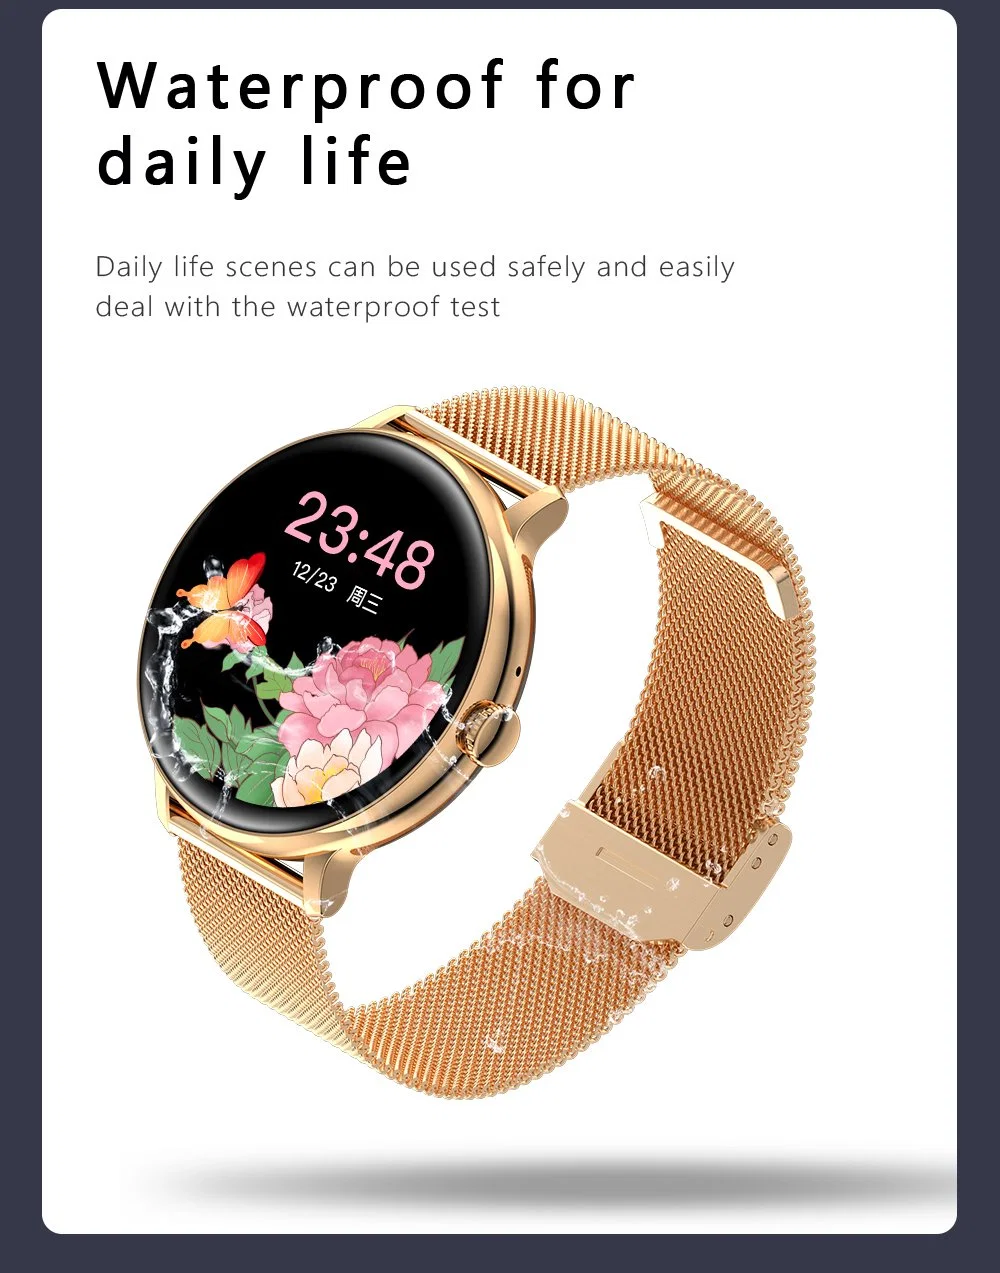 Heißer Verkauf Smart Watch Große Anzeige Wasserdicht Digital Sport Smart Uhren Smart Mobile Phone